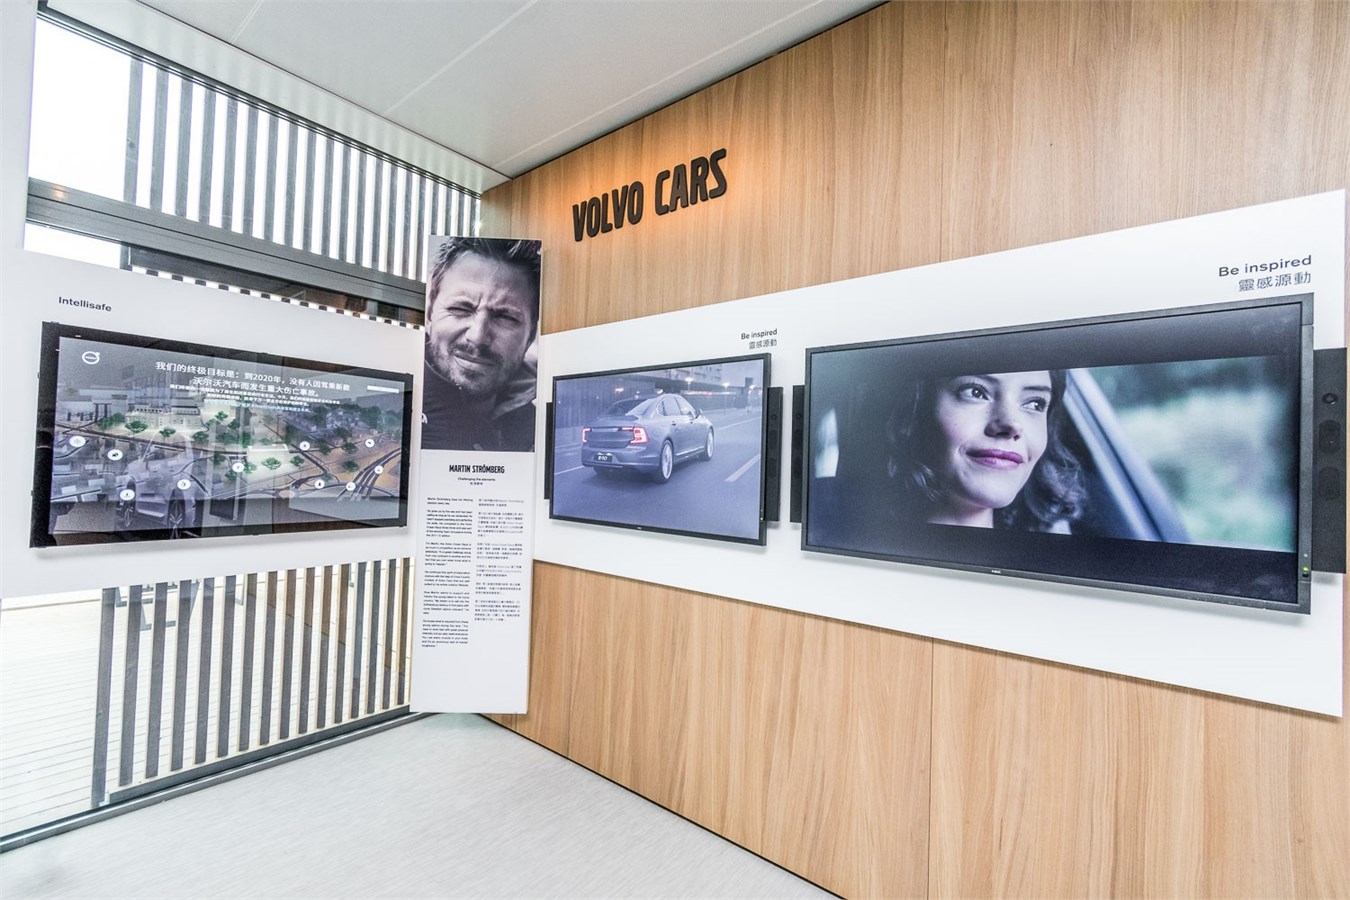 沃尔沃展馆向参观者展示沃尔沃汽车发展历程